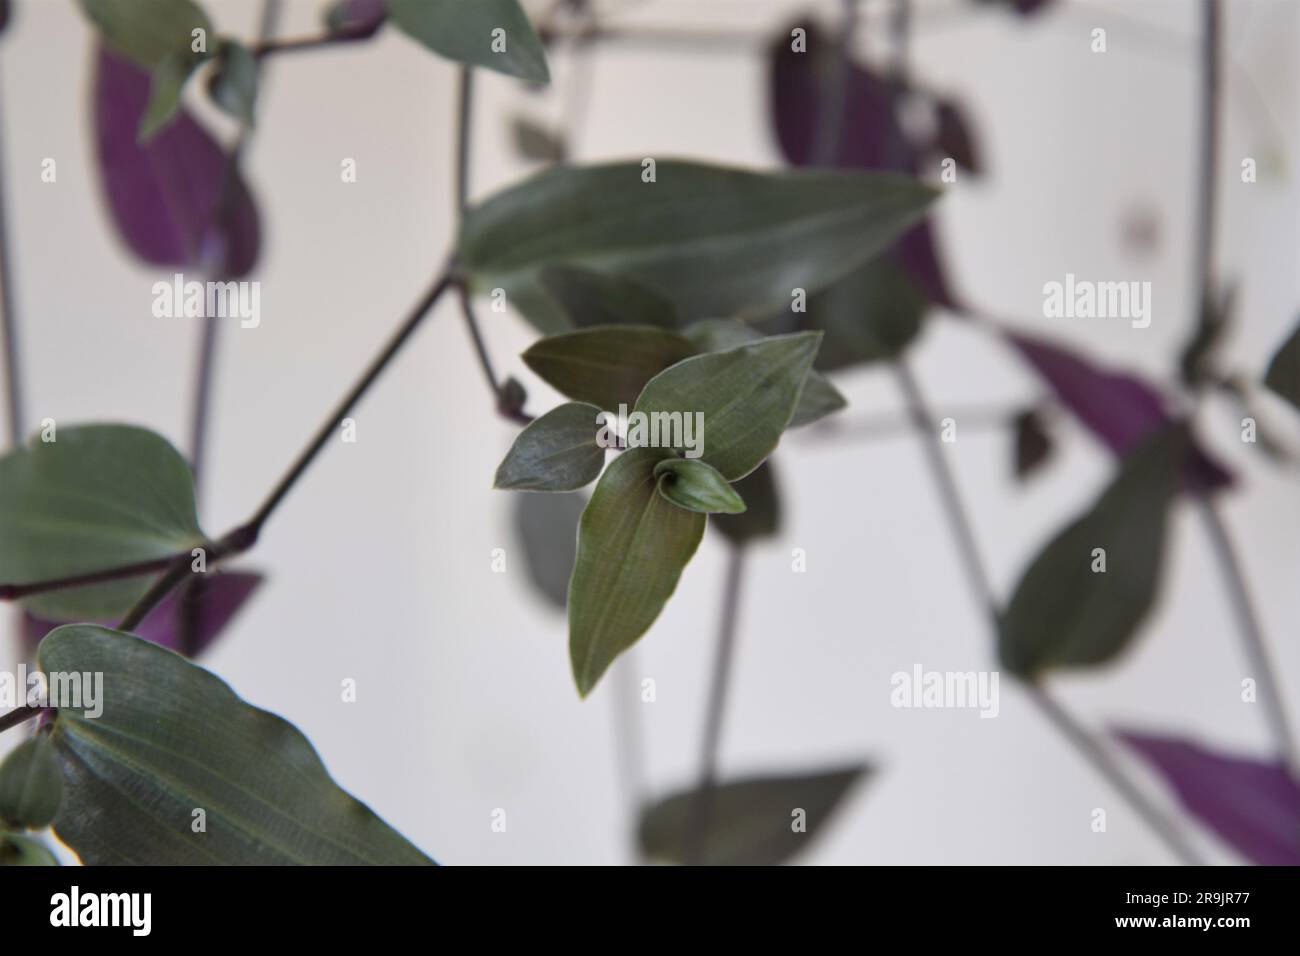 Gibasis geniculata (voile de mariée tahitien) plante d'intérieur suspendue. Vignes aux feuilles vert argenté et violet. Isolé sur fond blanc. Banque D'Images